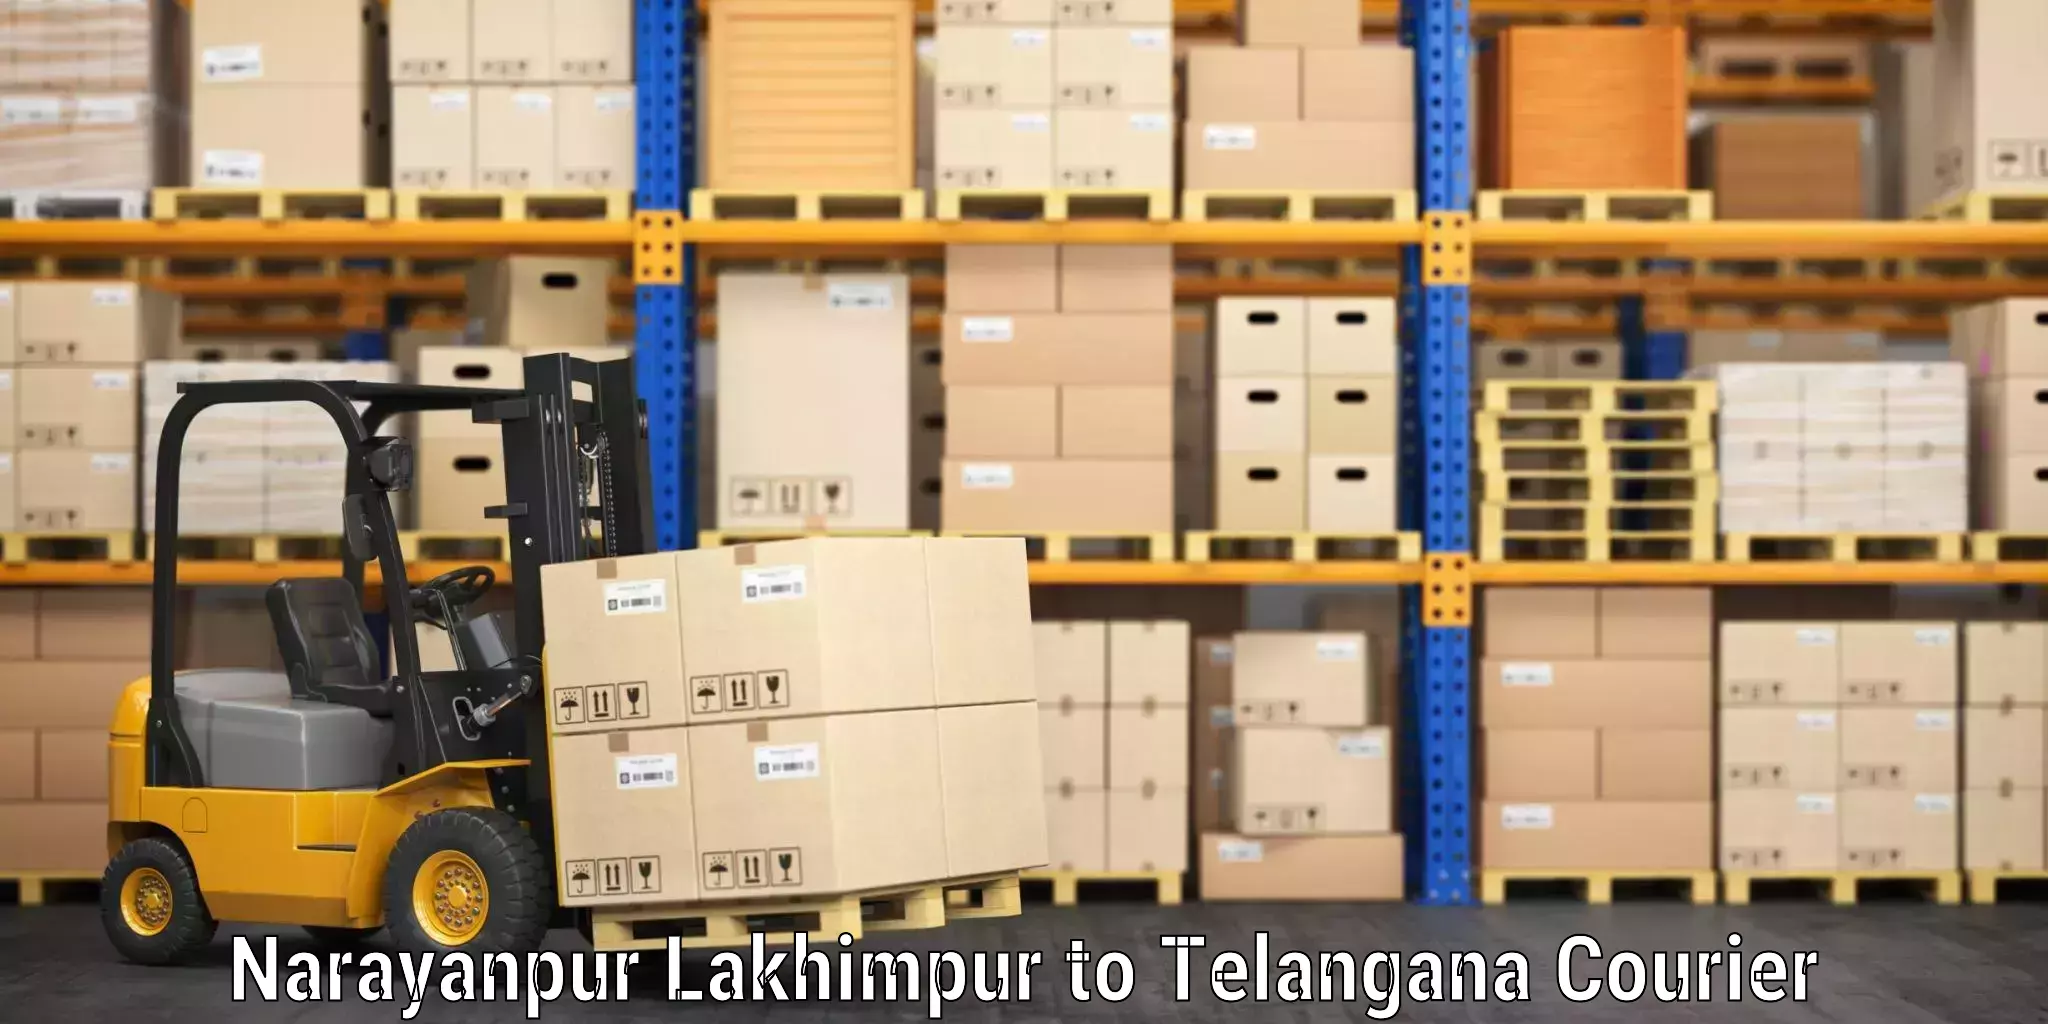 Premium luggage courier Narayanpur Lakhimpur to Telangana